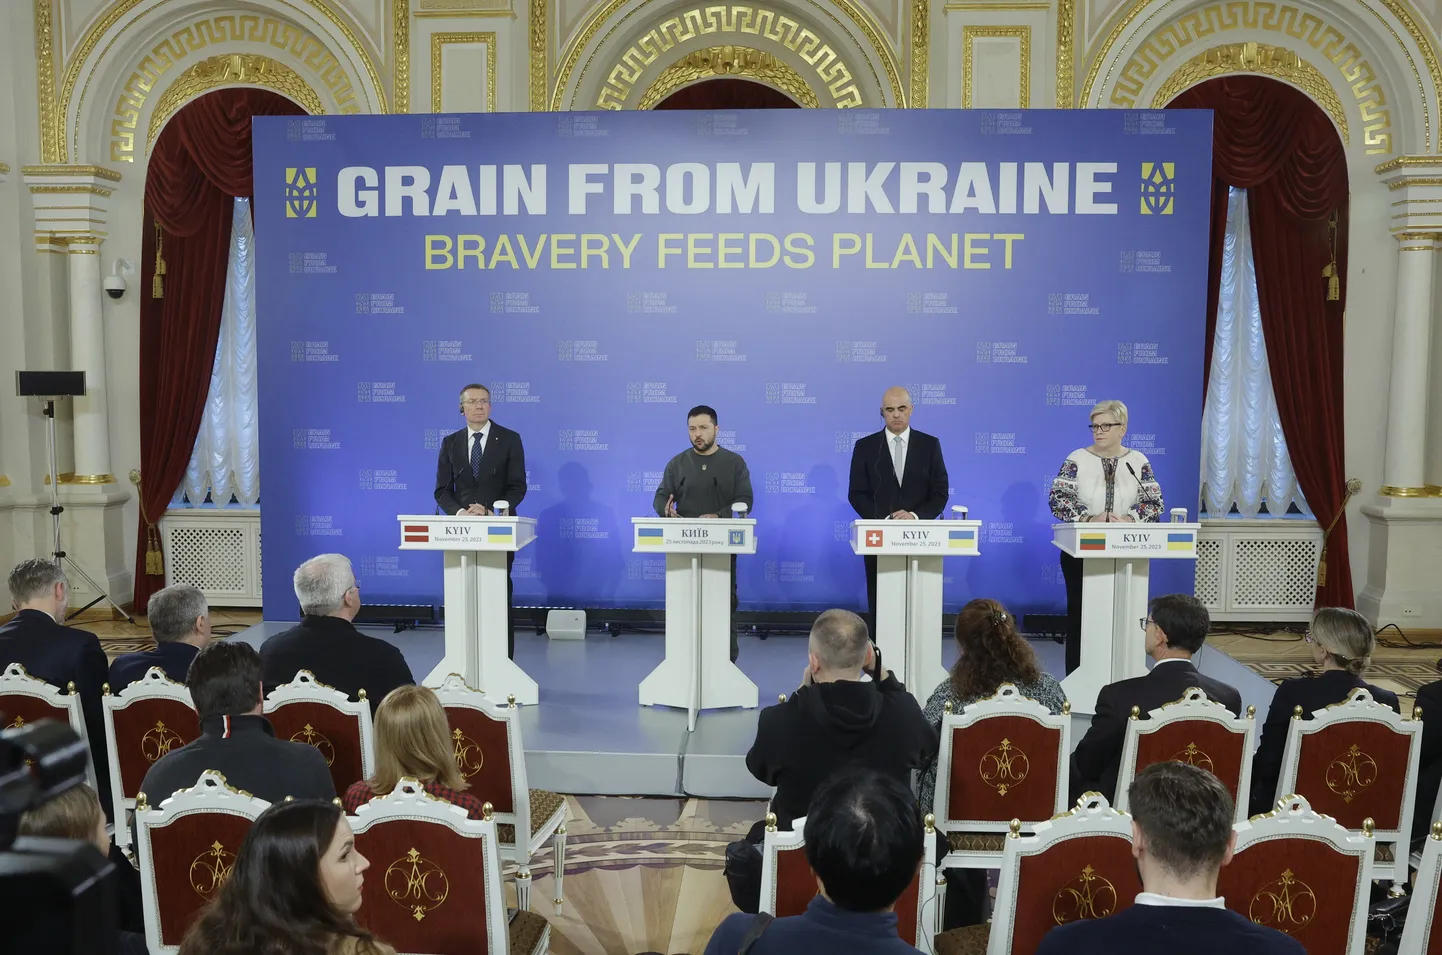 Пресс-конференция после международного саммита "Зерно из Украины" в Киеве